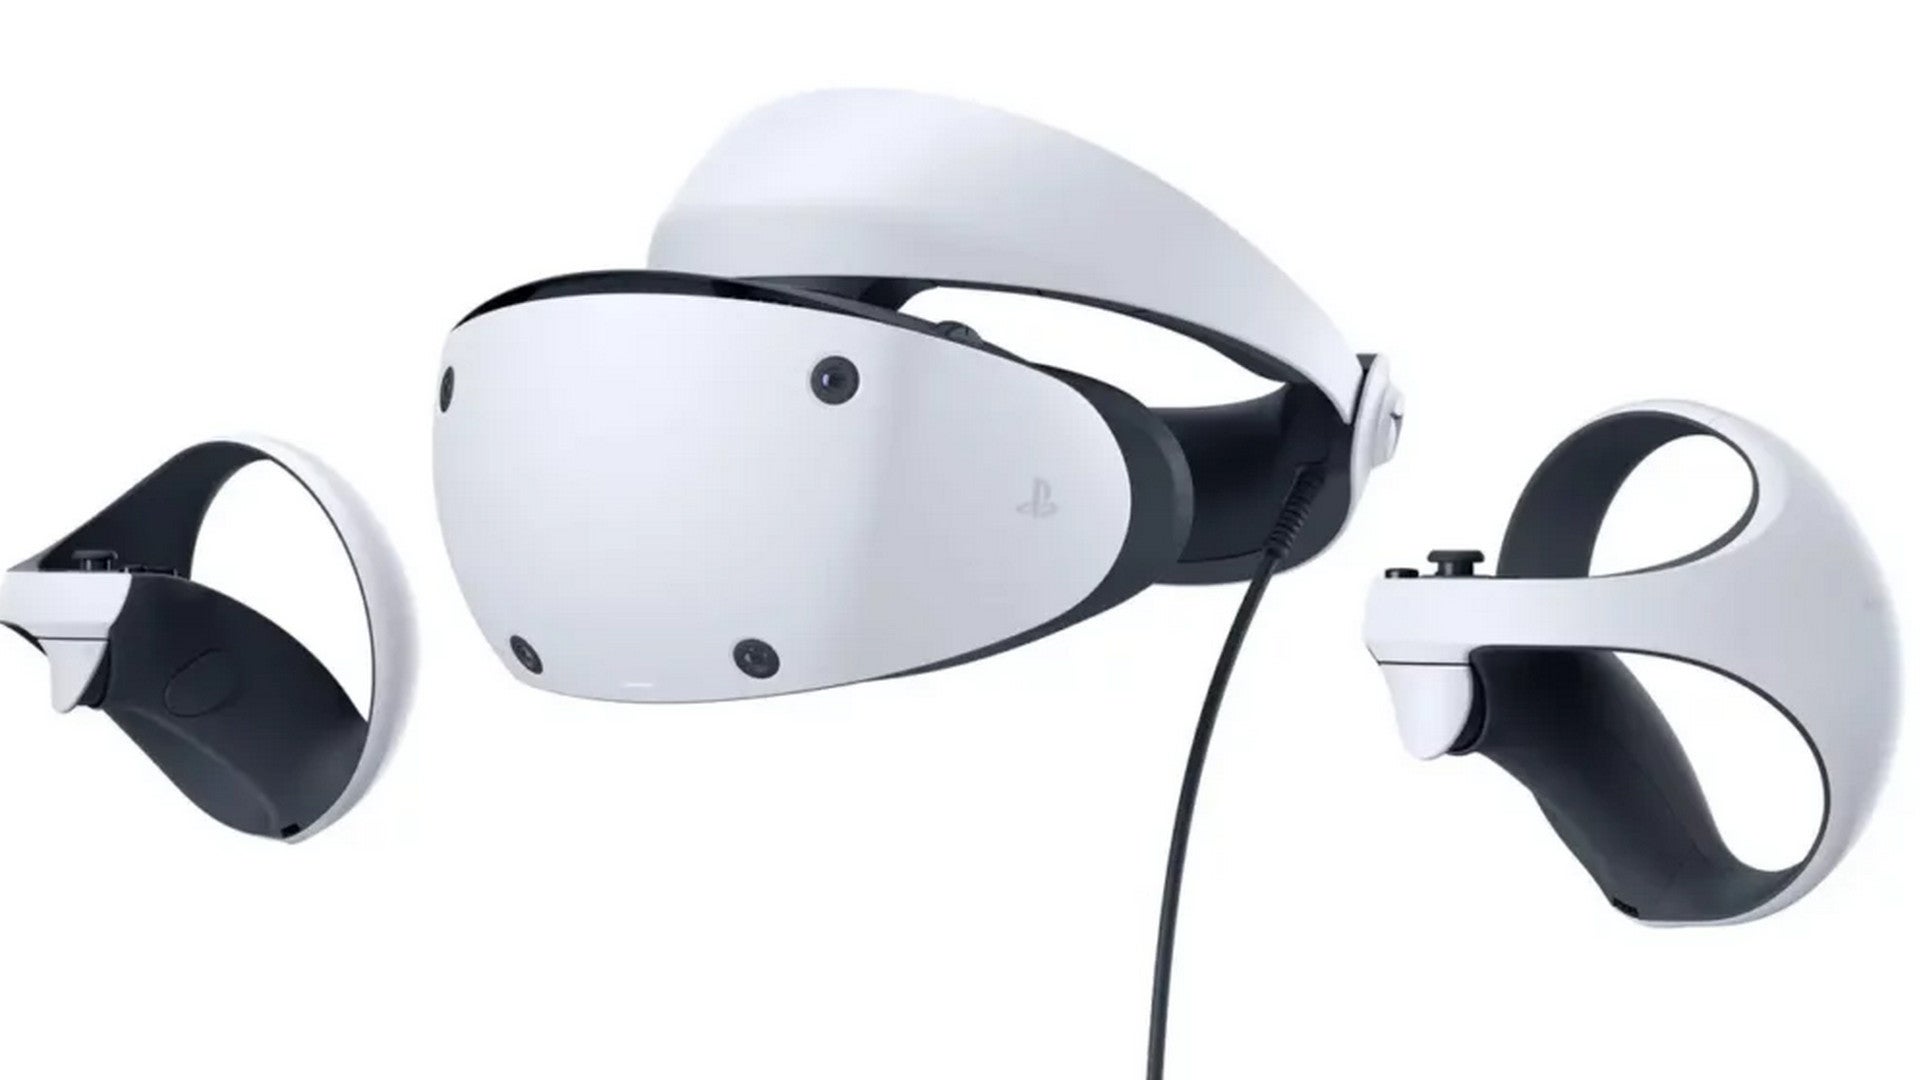 Bilder zu PlayStation VR2 erscheint aufgrund einer "Verzögerung" erst 2023, deutet an Analyst an